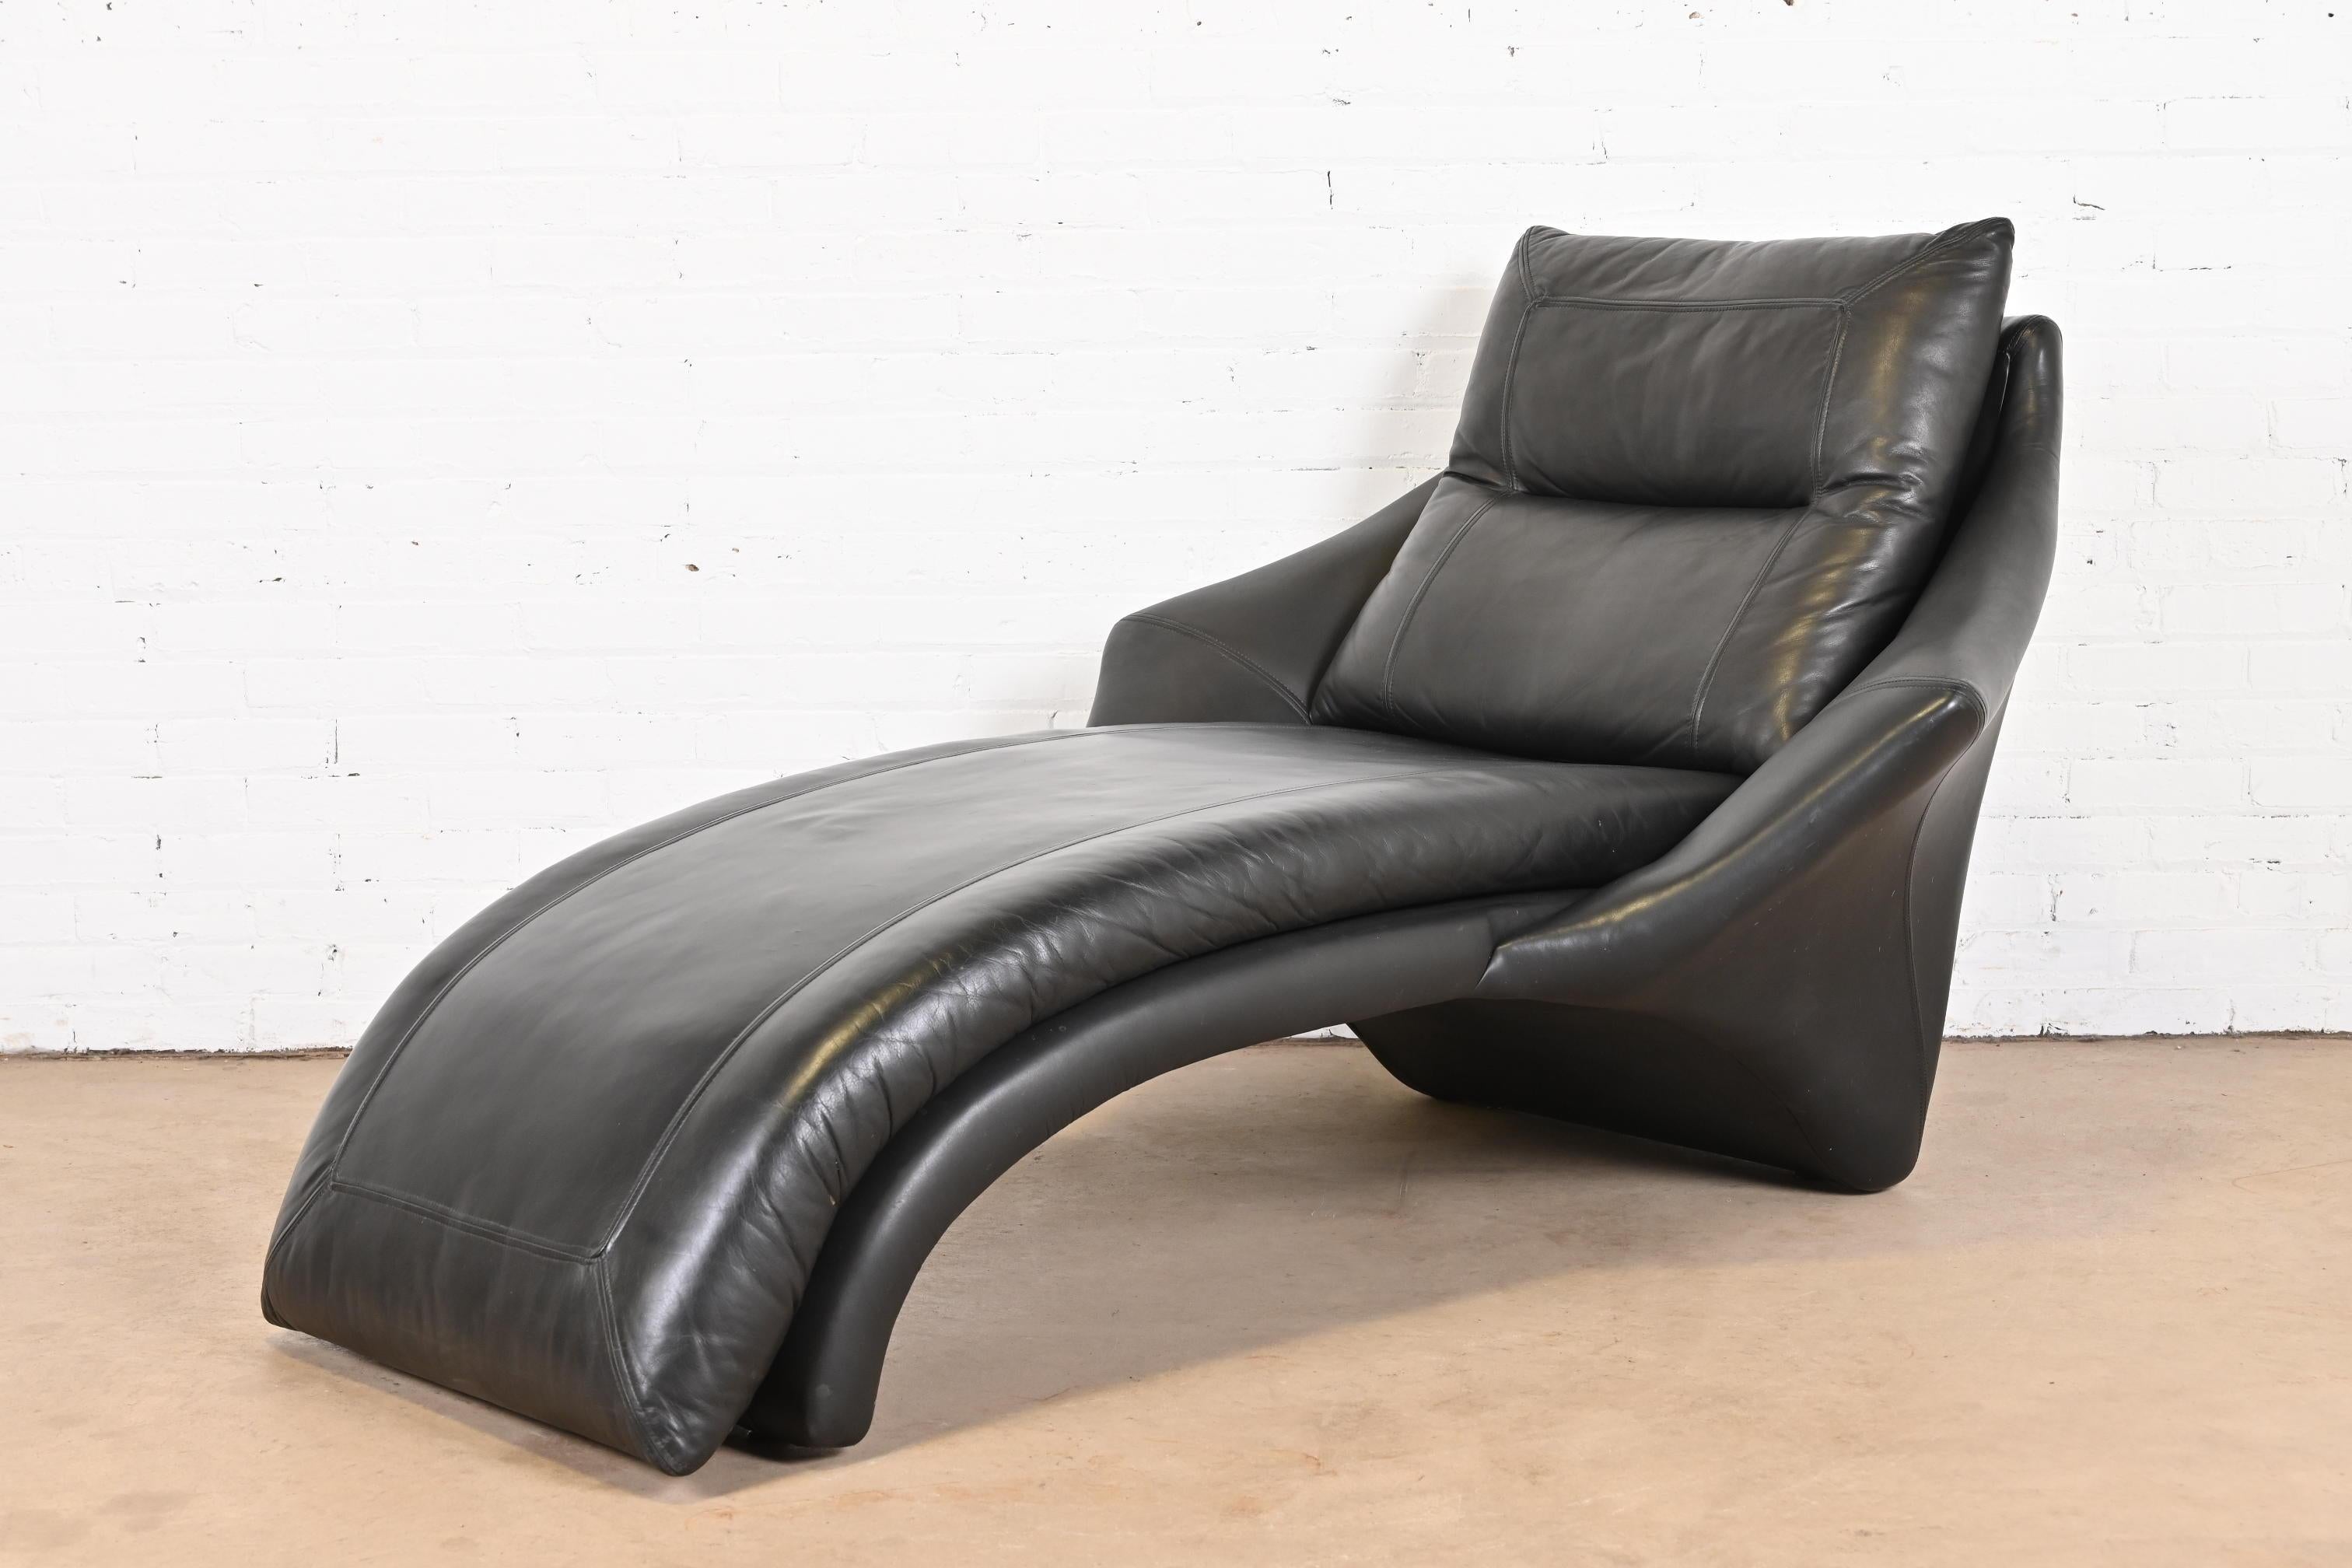 Une magnifique chaise longue moderne en cuir noir

Par Roger Rougier

Canada, années 1980

Dimensions : 46 